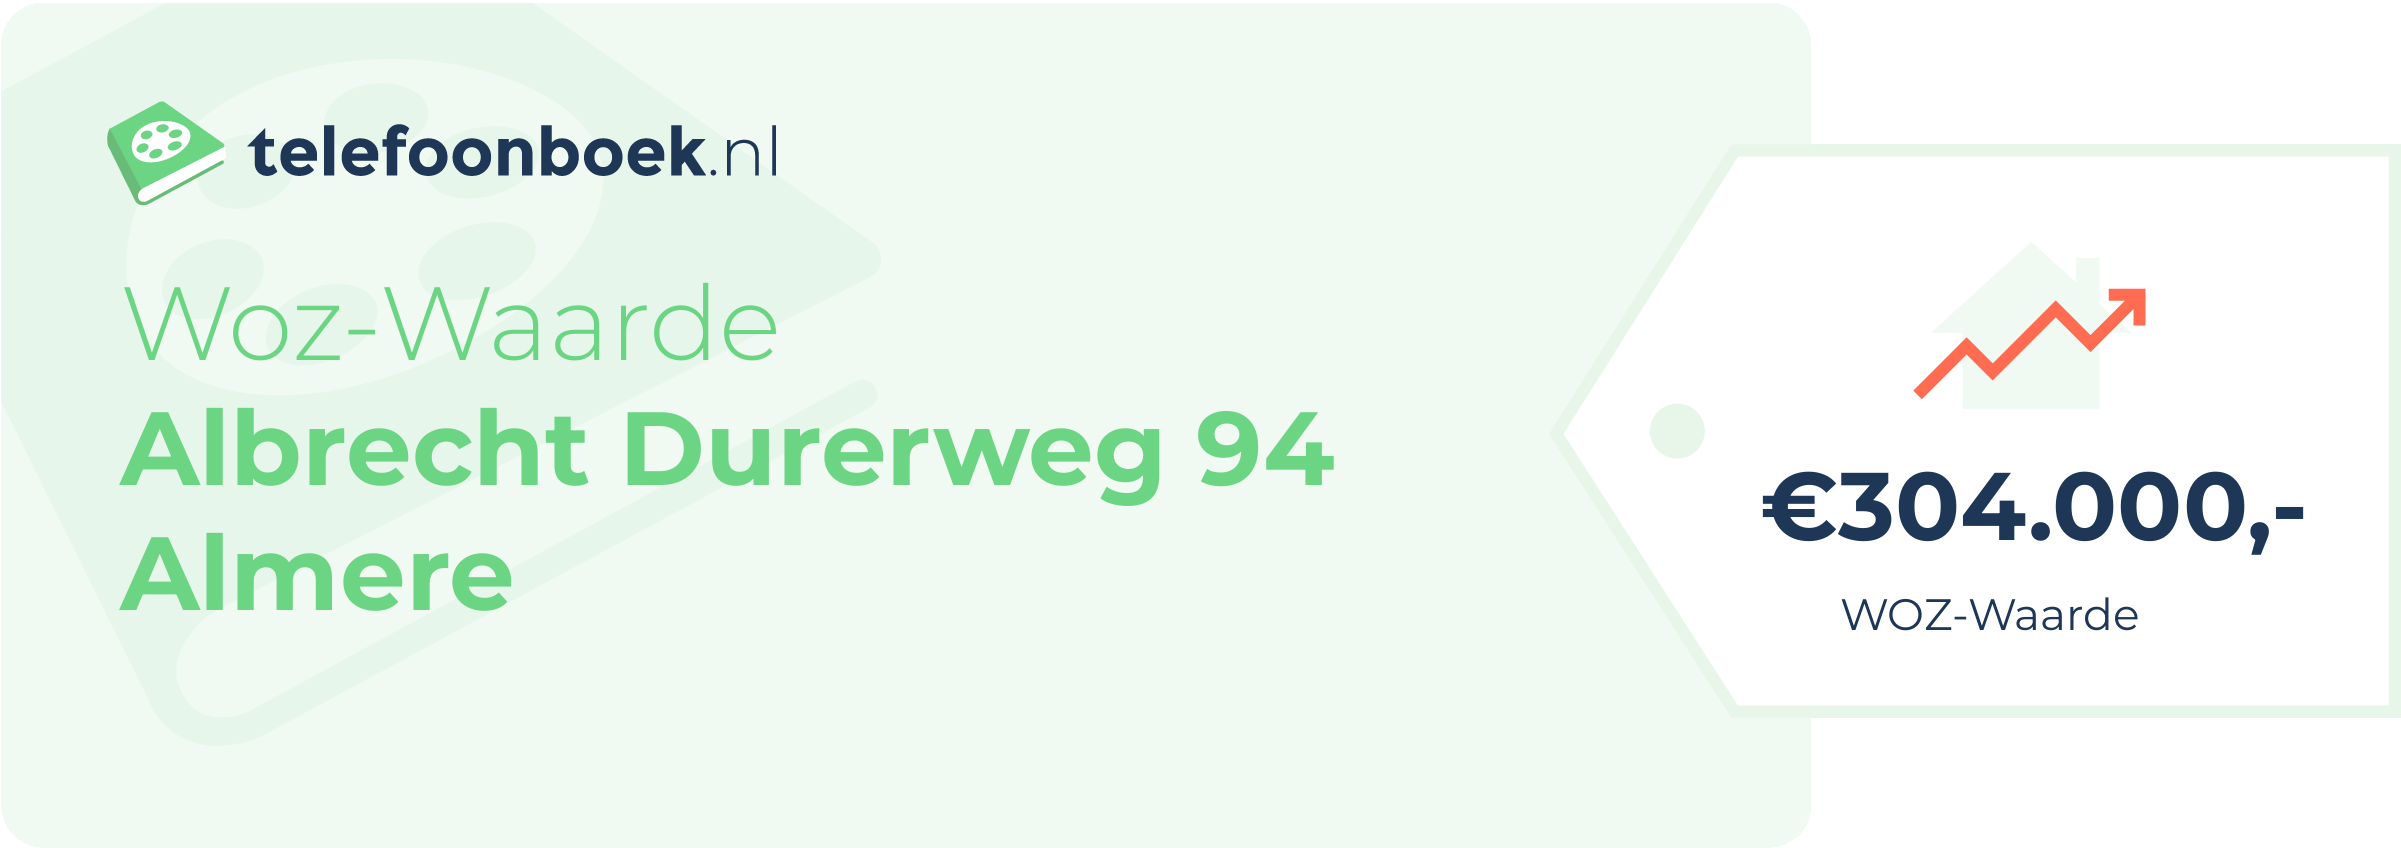 WOZ-waarde Albrecht Durerweg 94 Almere